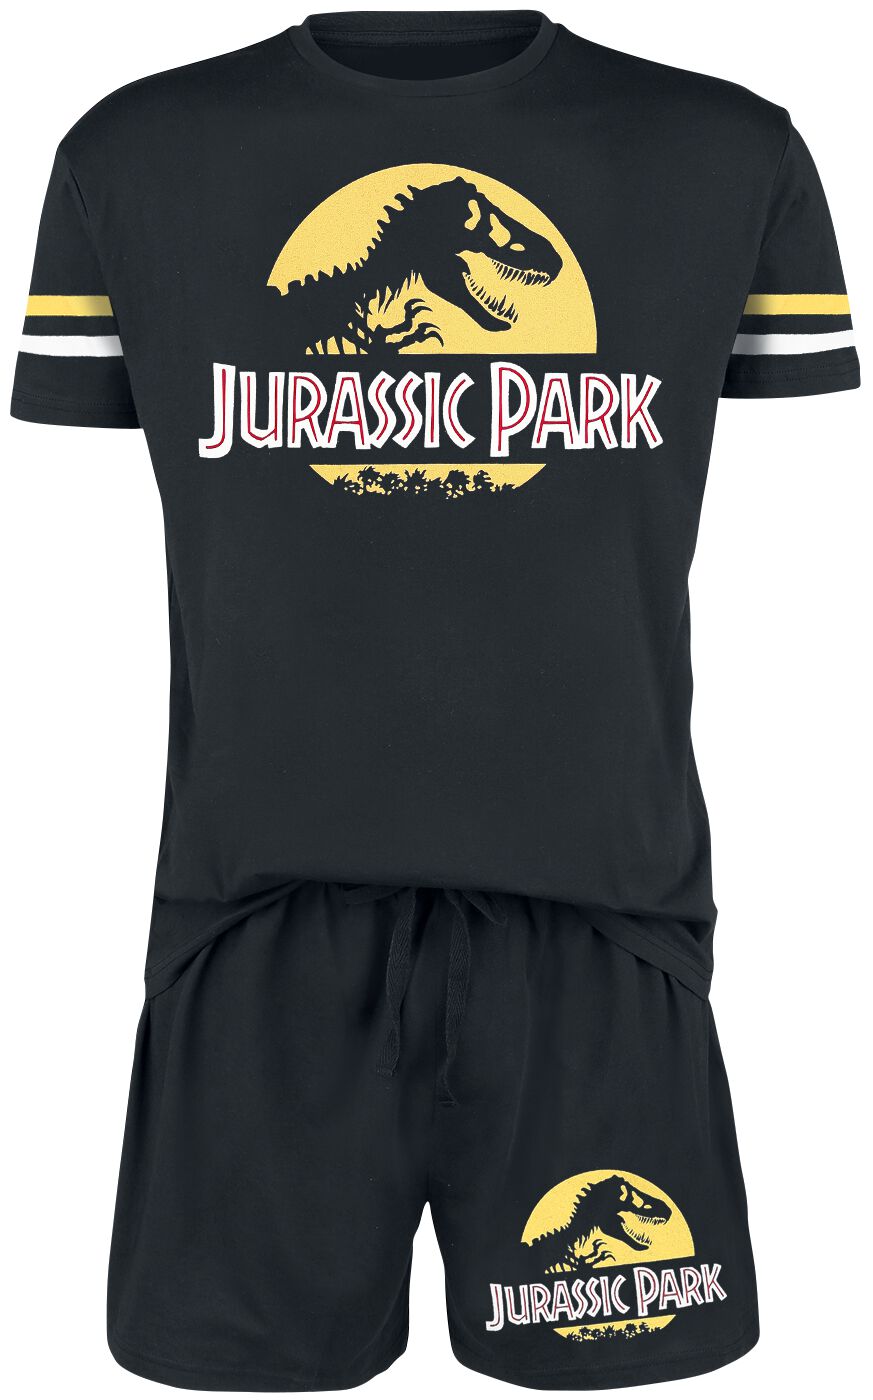 Jurassic Park Schlafanzug - Logo - S bis 3XL - für Männer - Größe XL - schwarz  - EMP exklusives Merchandise!